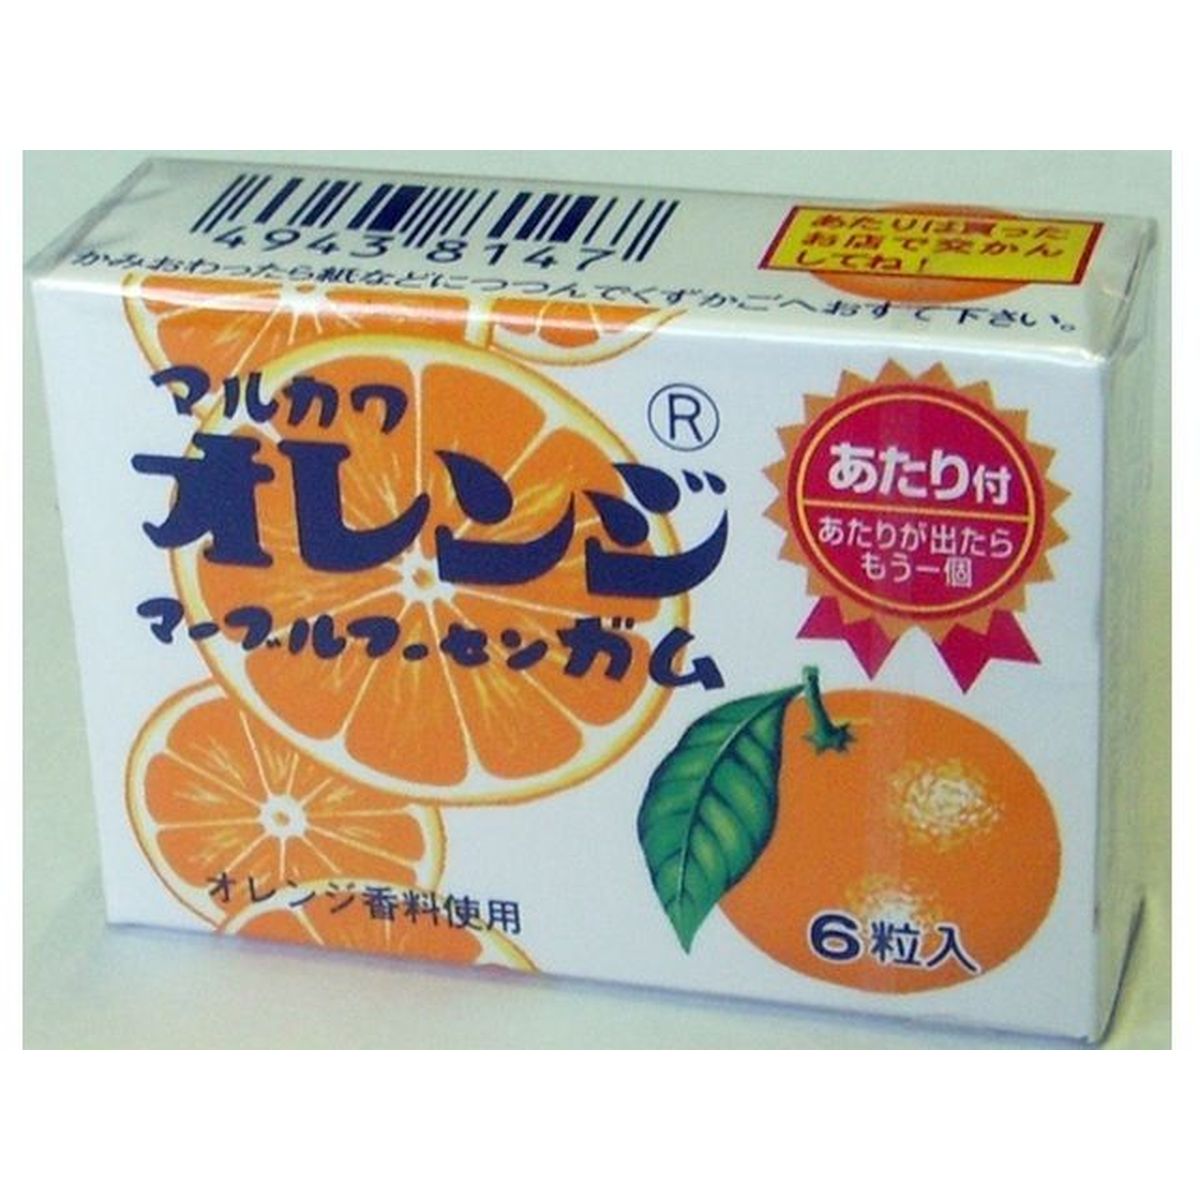 【33個入リ】丸川製菓 20 オレンジマーブルガム 6粒